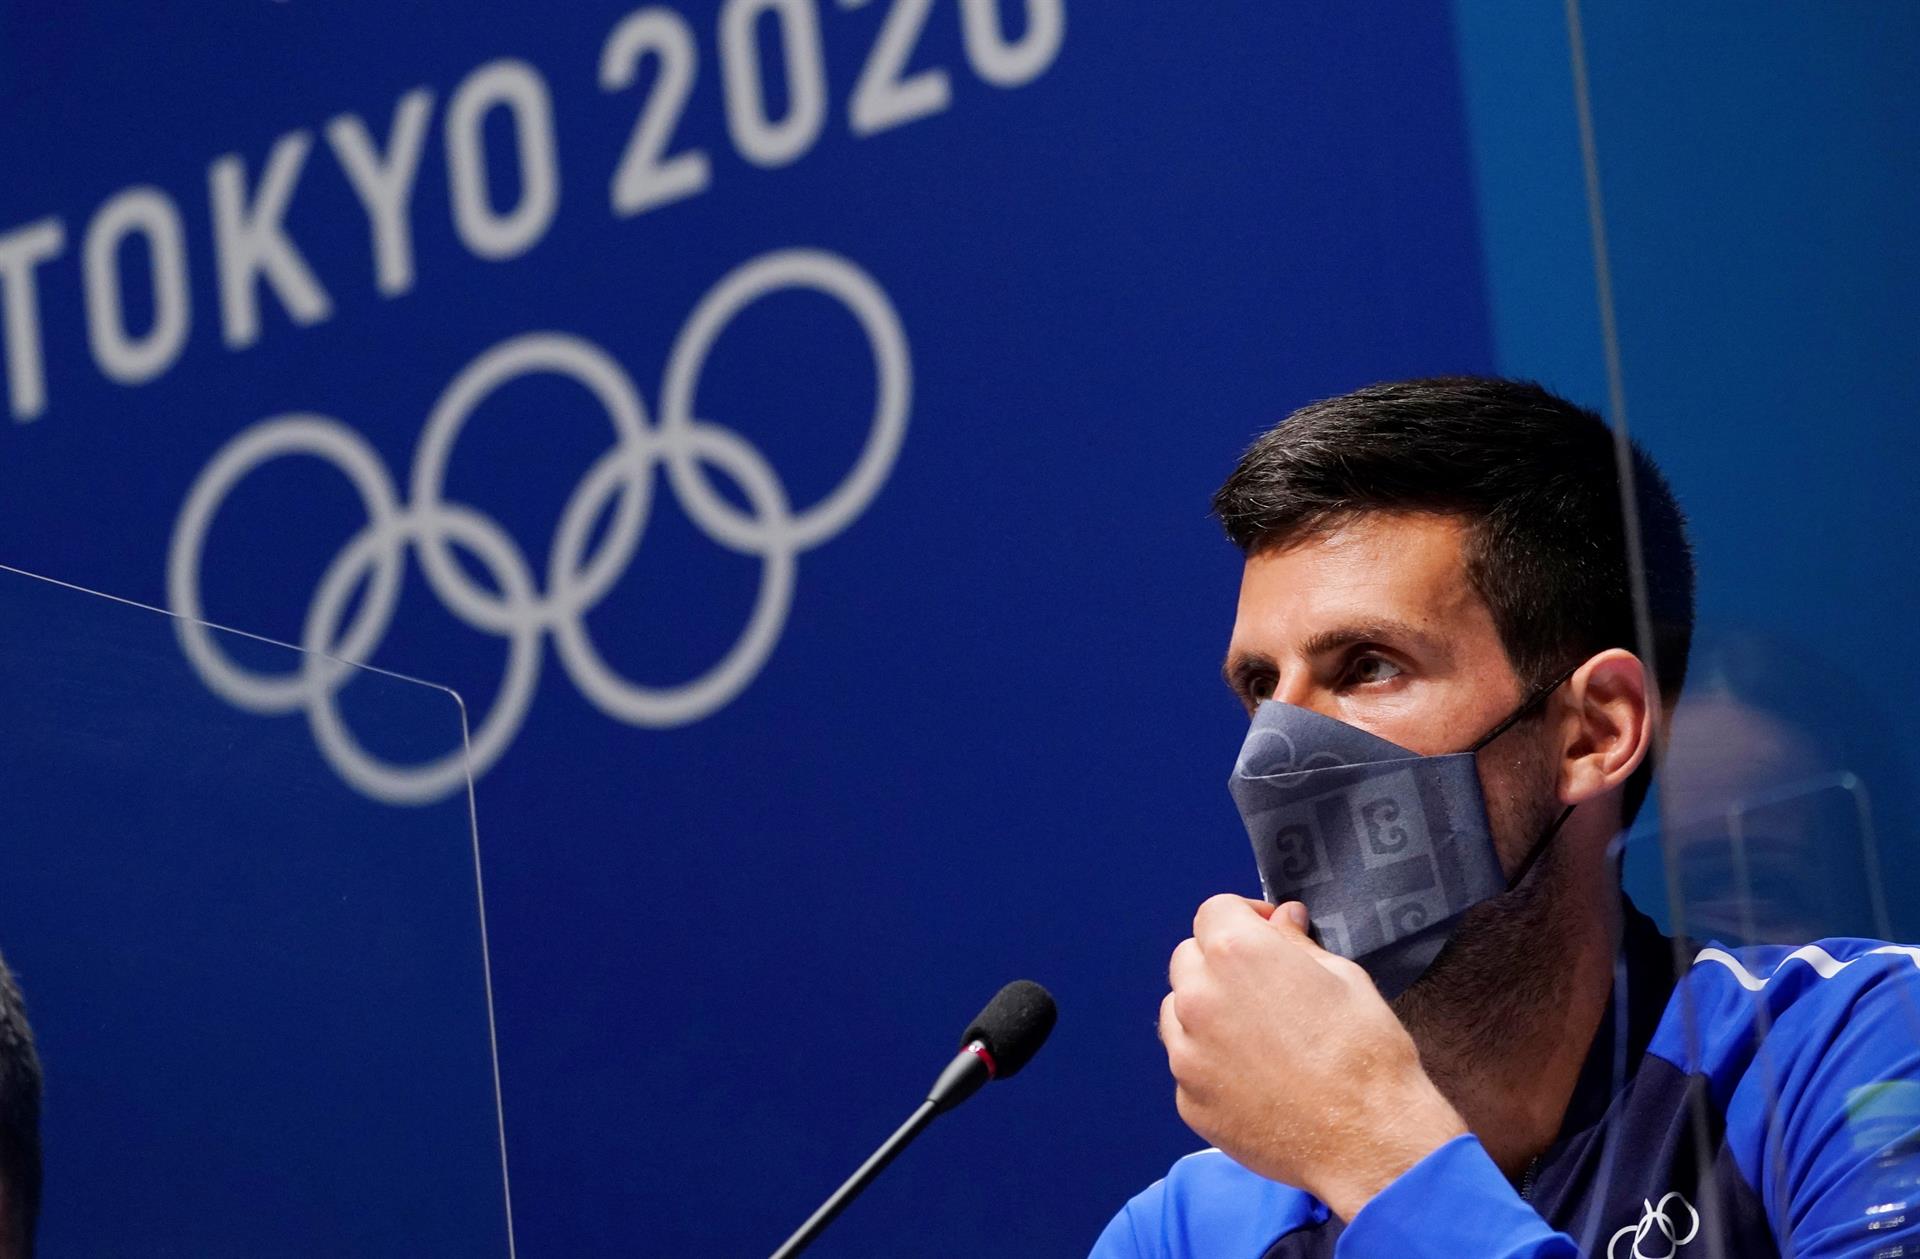 Australia podría expulsar a Djokovic pese a su victoria judicial